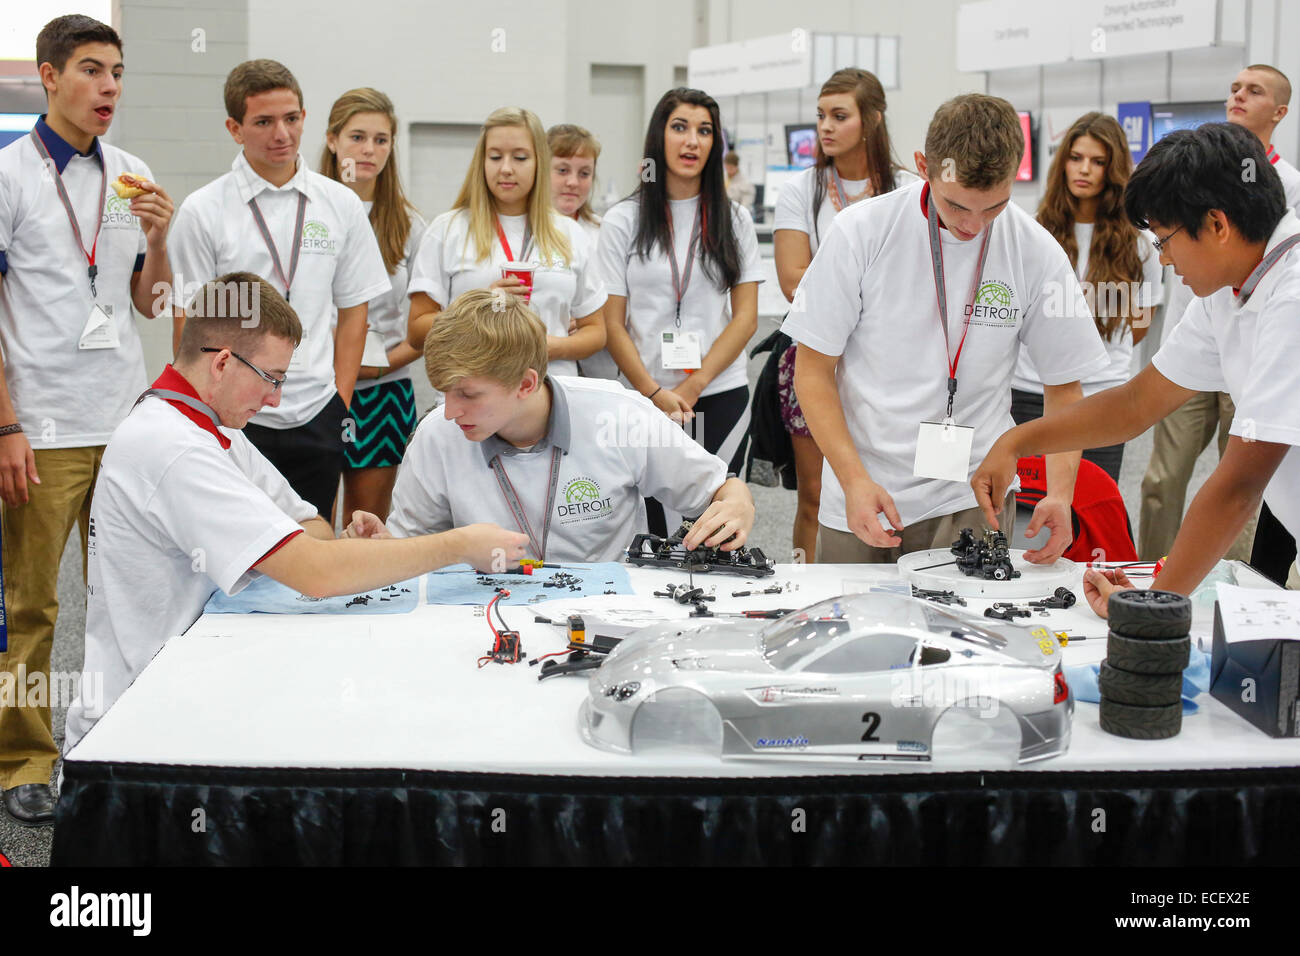 Detroit, Michigan - élèves du secondaire en compétition pour construire un modèle d'auto-conduite automobile. Banque D'Images